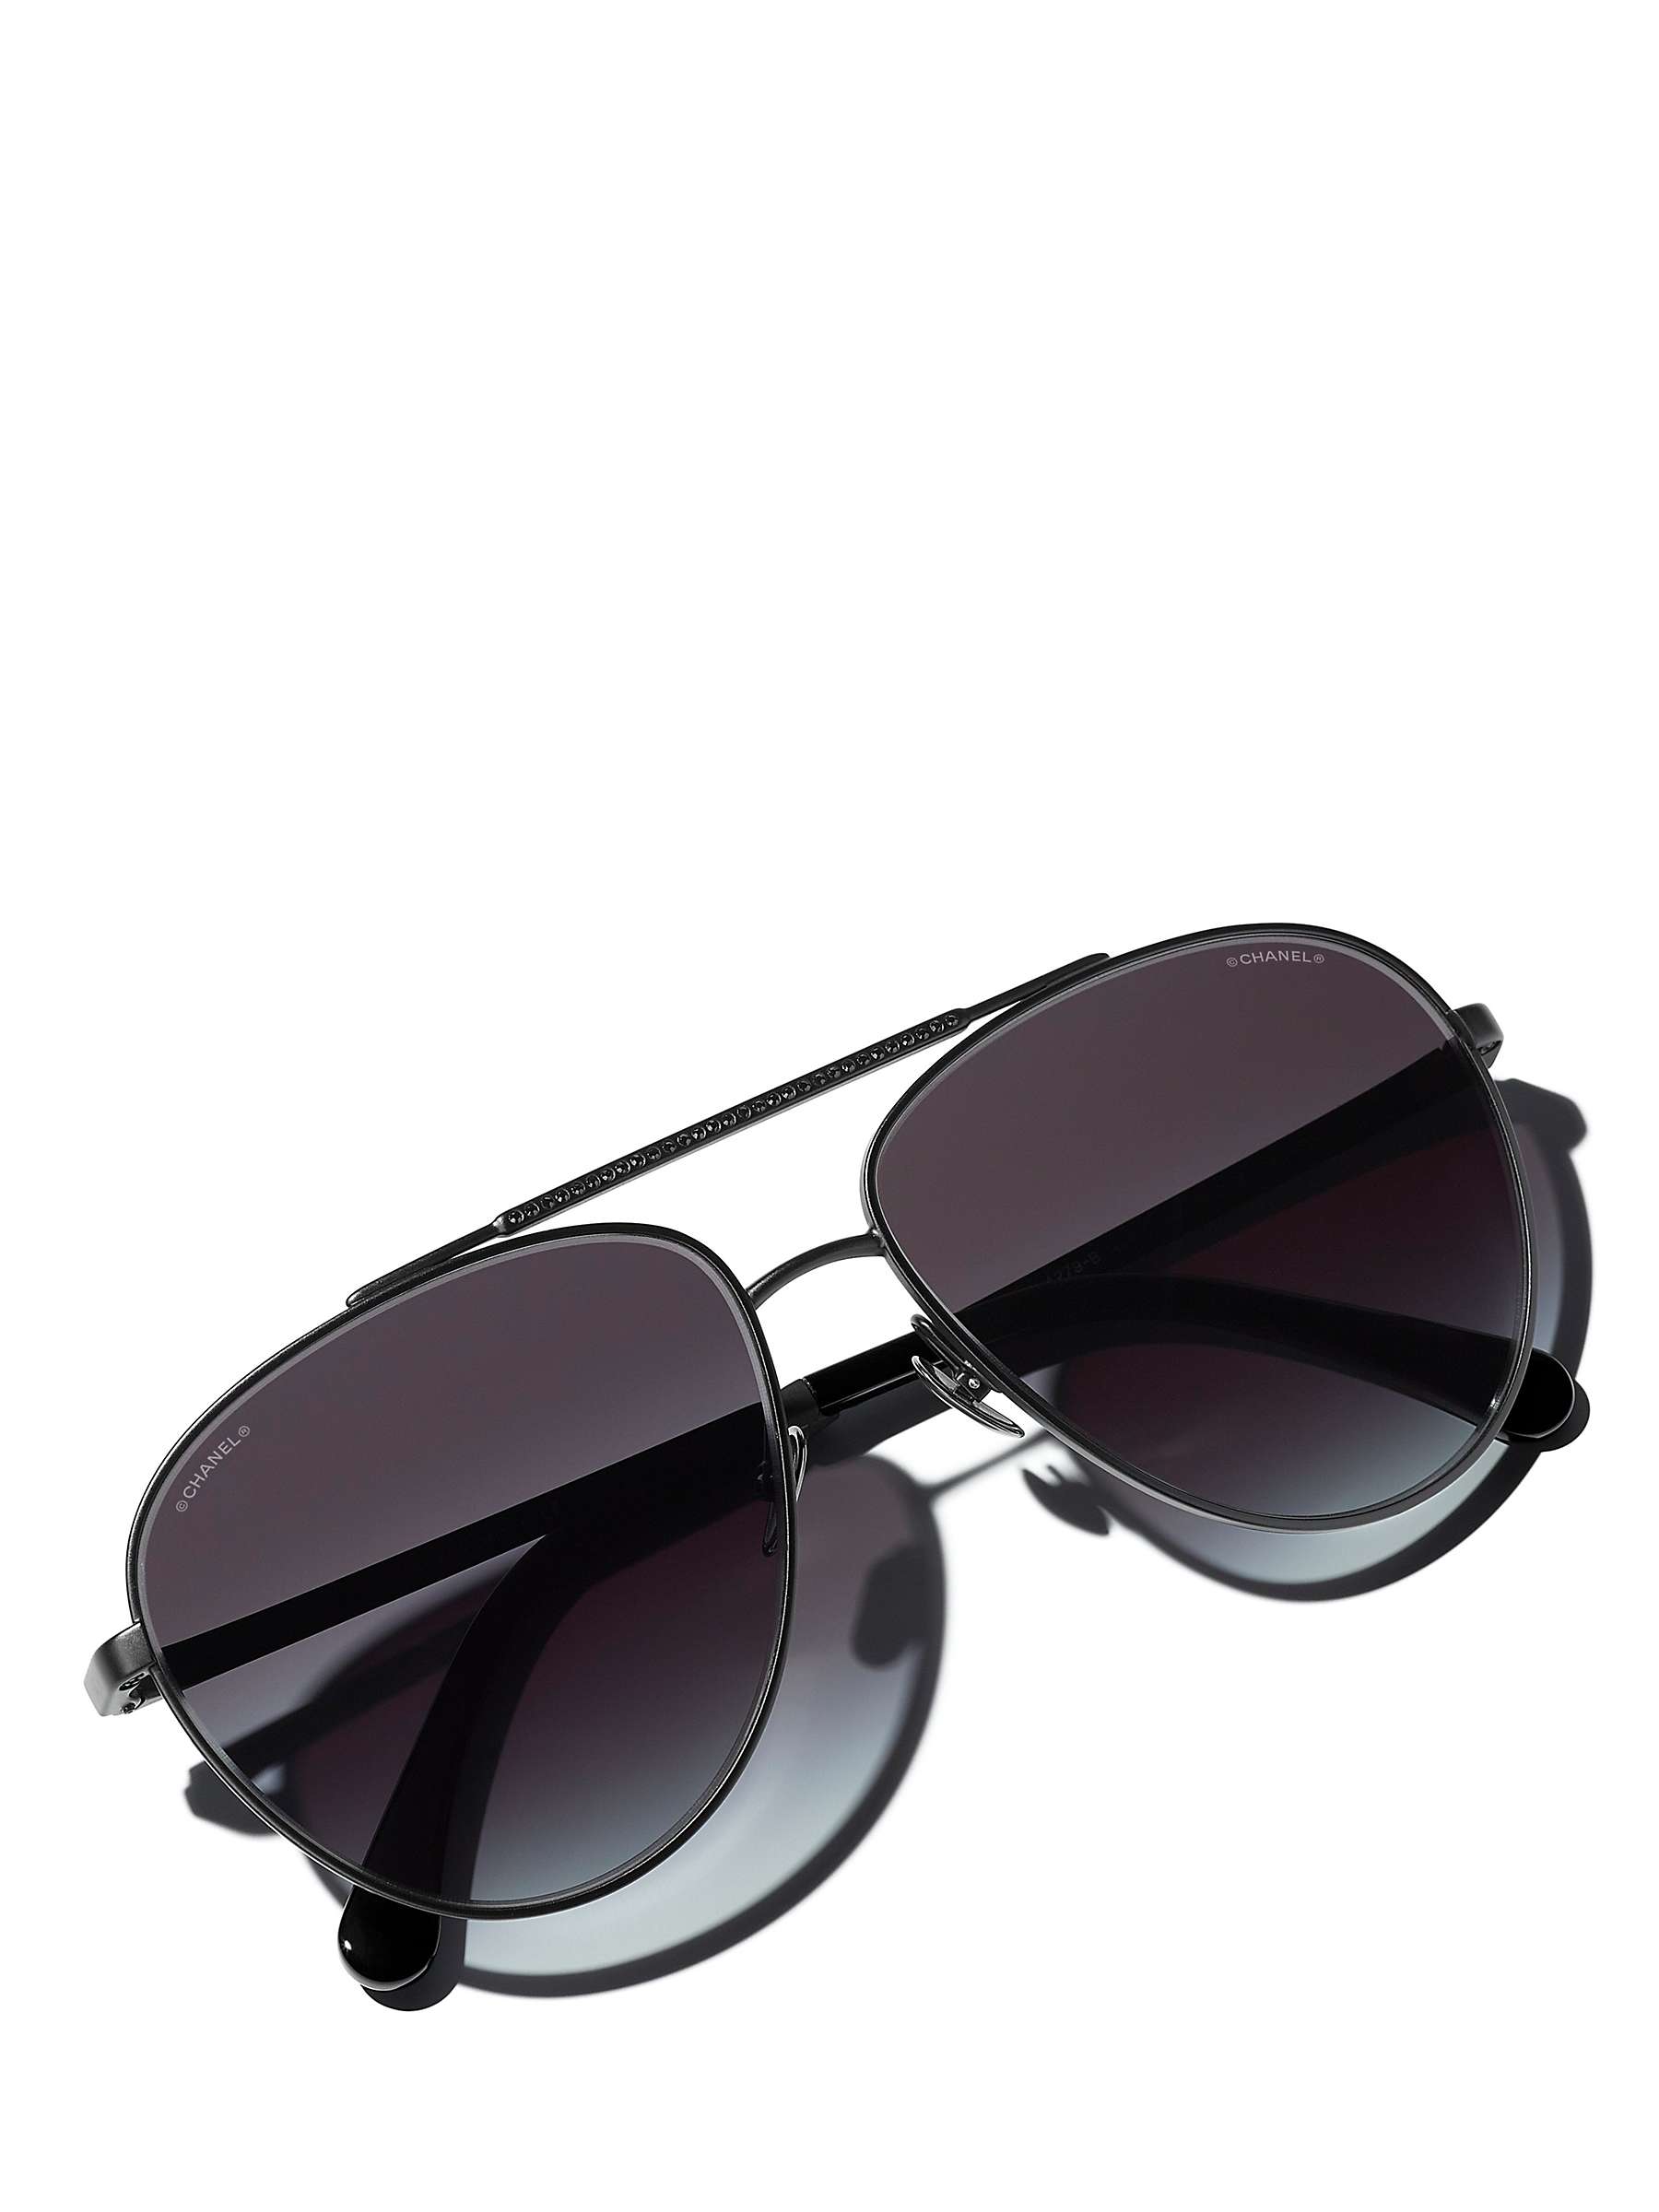 Buy CHANEL Pilot Sunglasses CH4279B Matte Black/Blue Gradient Online at johnlewis.com